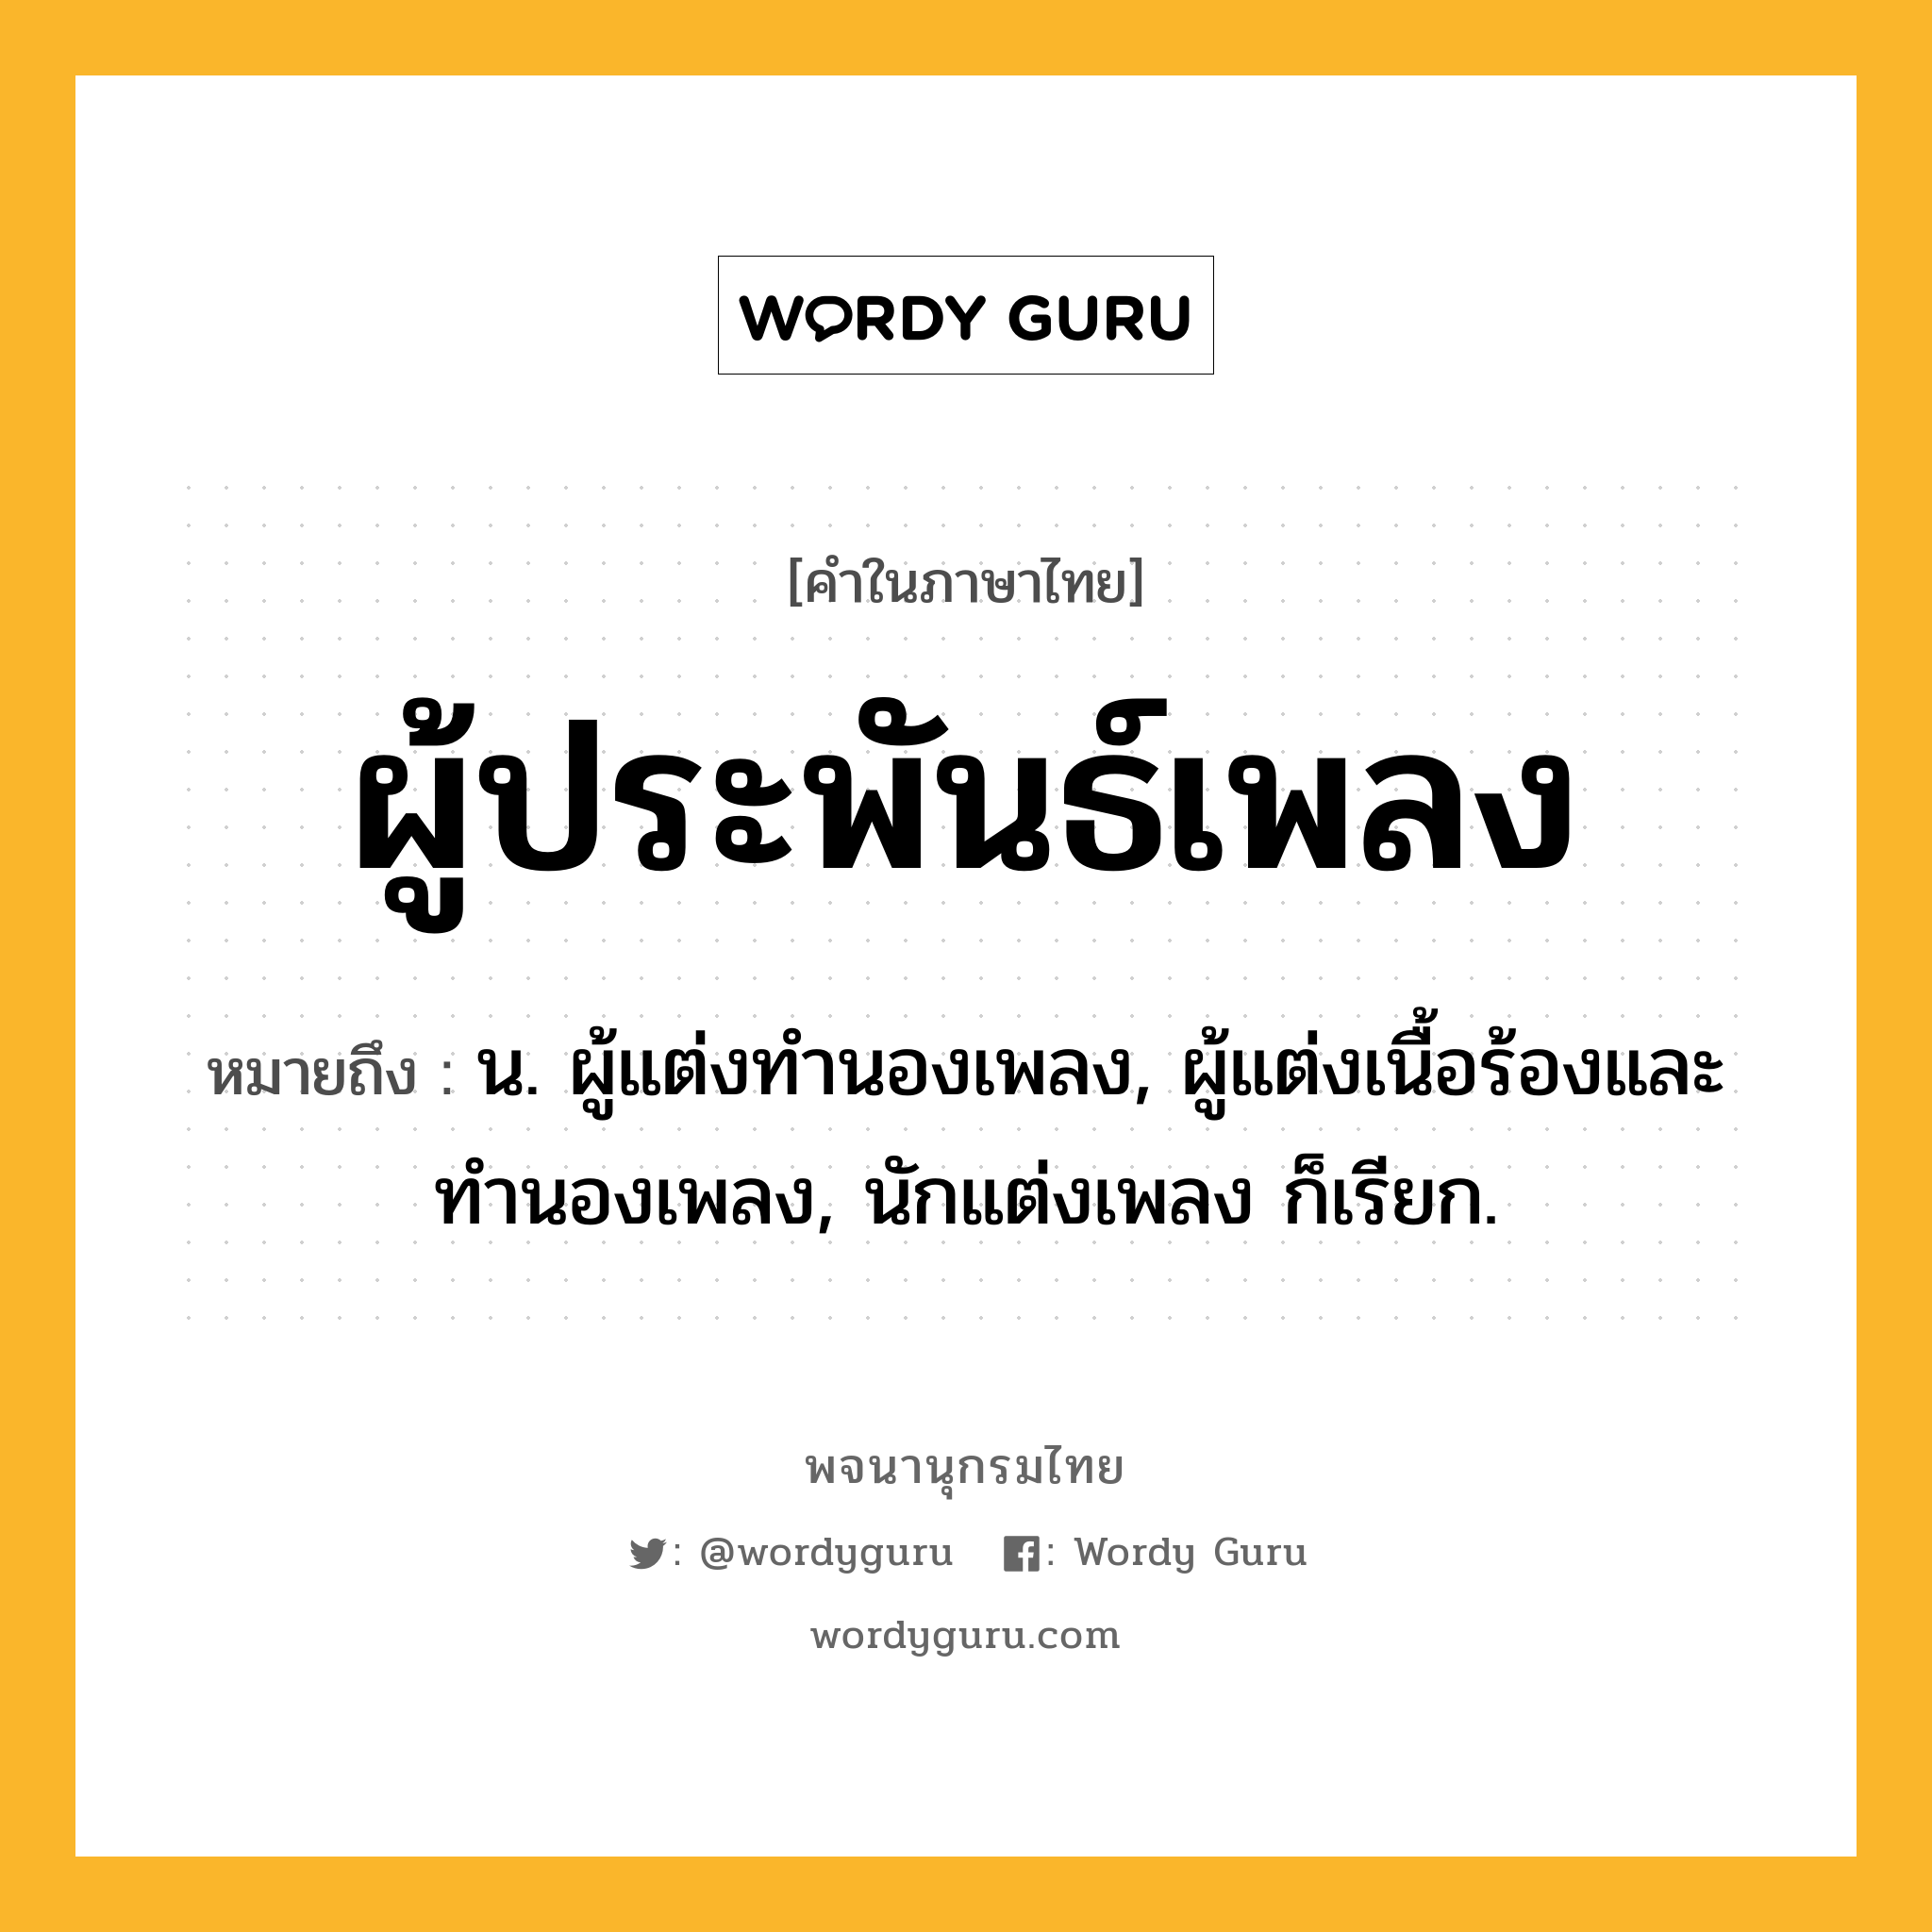 ผู้ประพันธ์เพลง ความหมาย หมายถึงอะไร?, คำในภาษาไทย ผู้ประพันธ์เพลง หมายถึง น. ผู้แต่งทำนองเพลง, ผู้แต่งเนื้อร้องและทำนองเพลง, นักแต่งเพลง ก็เรียก.